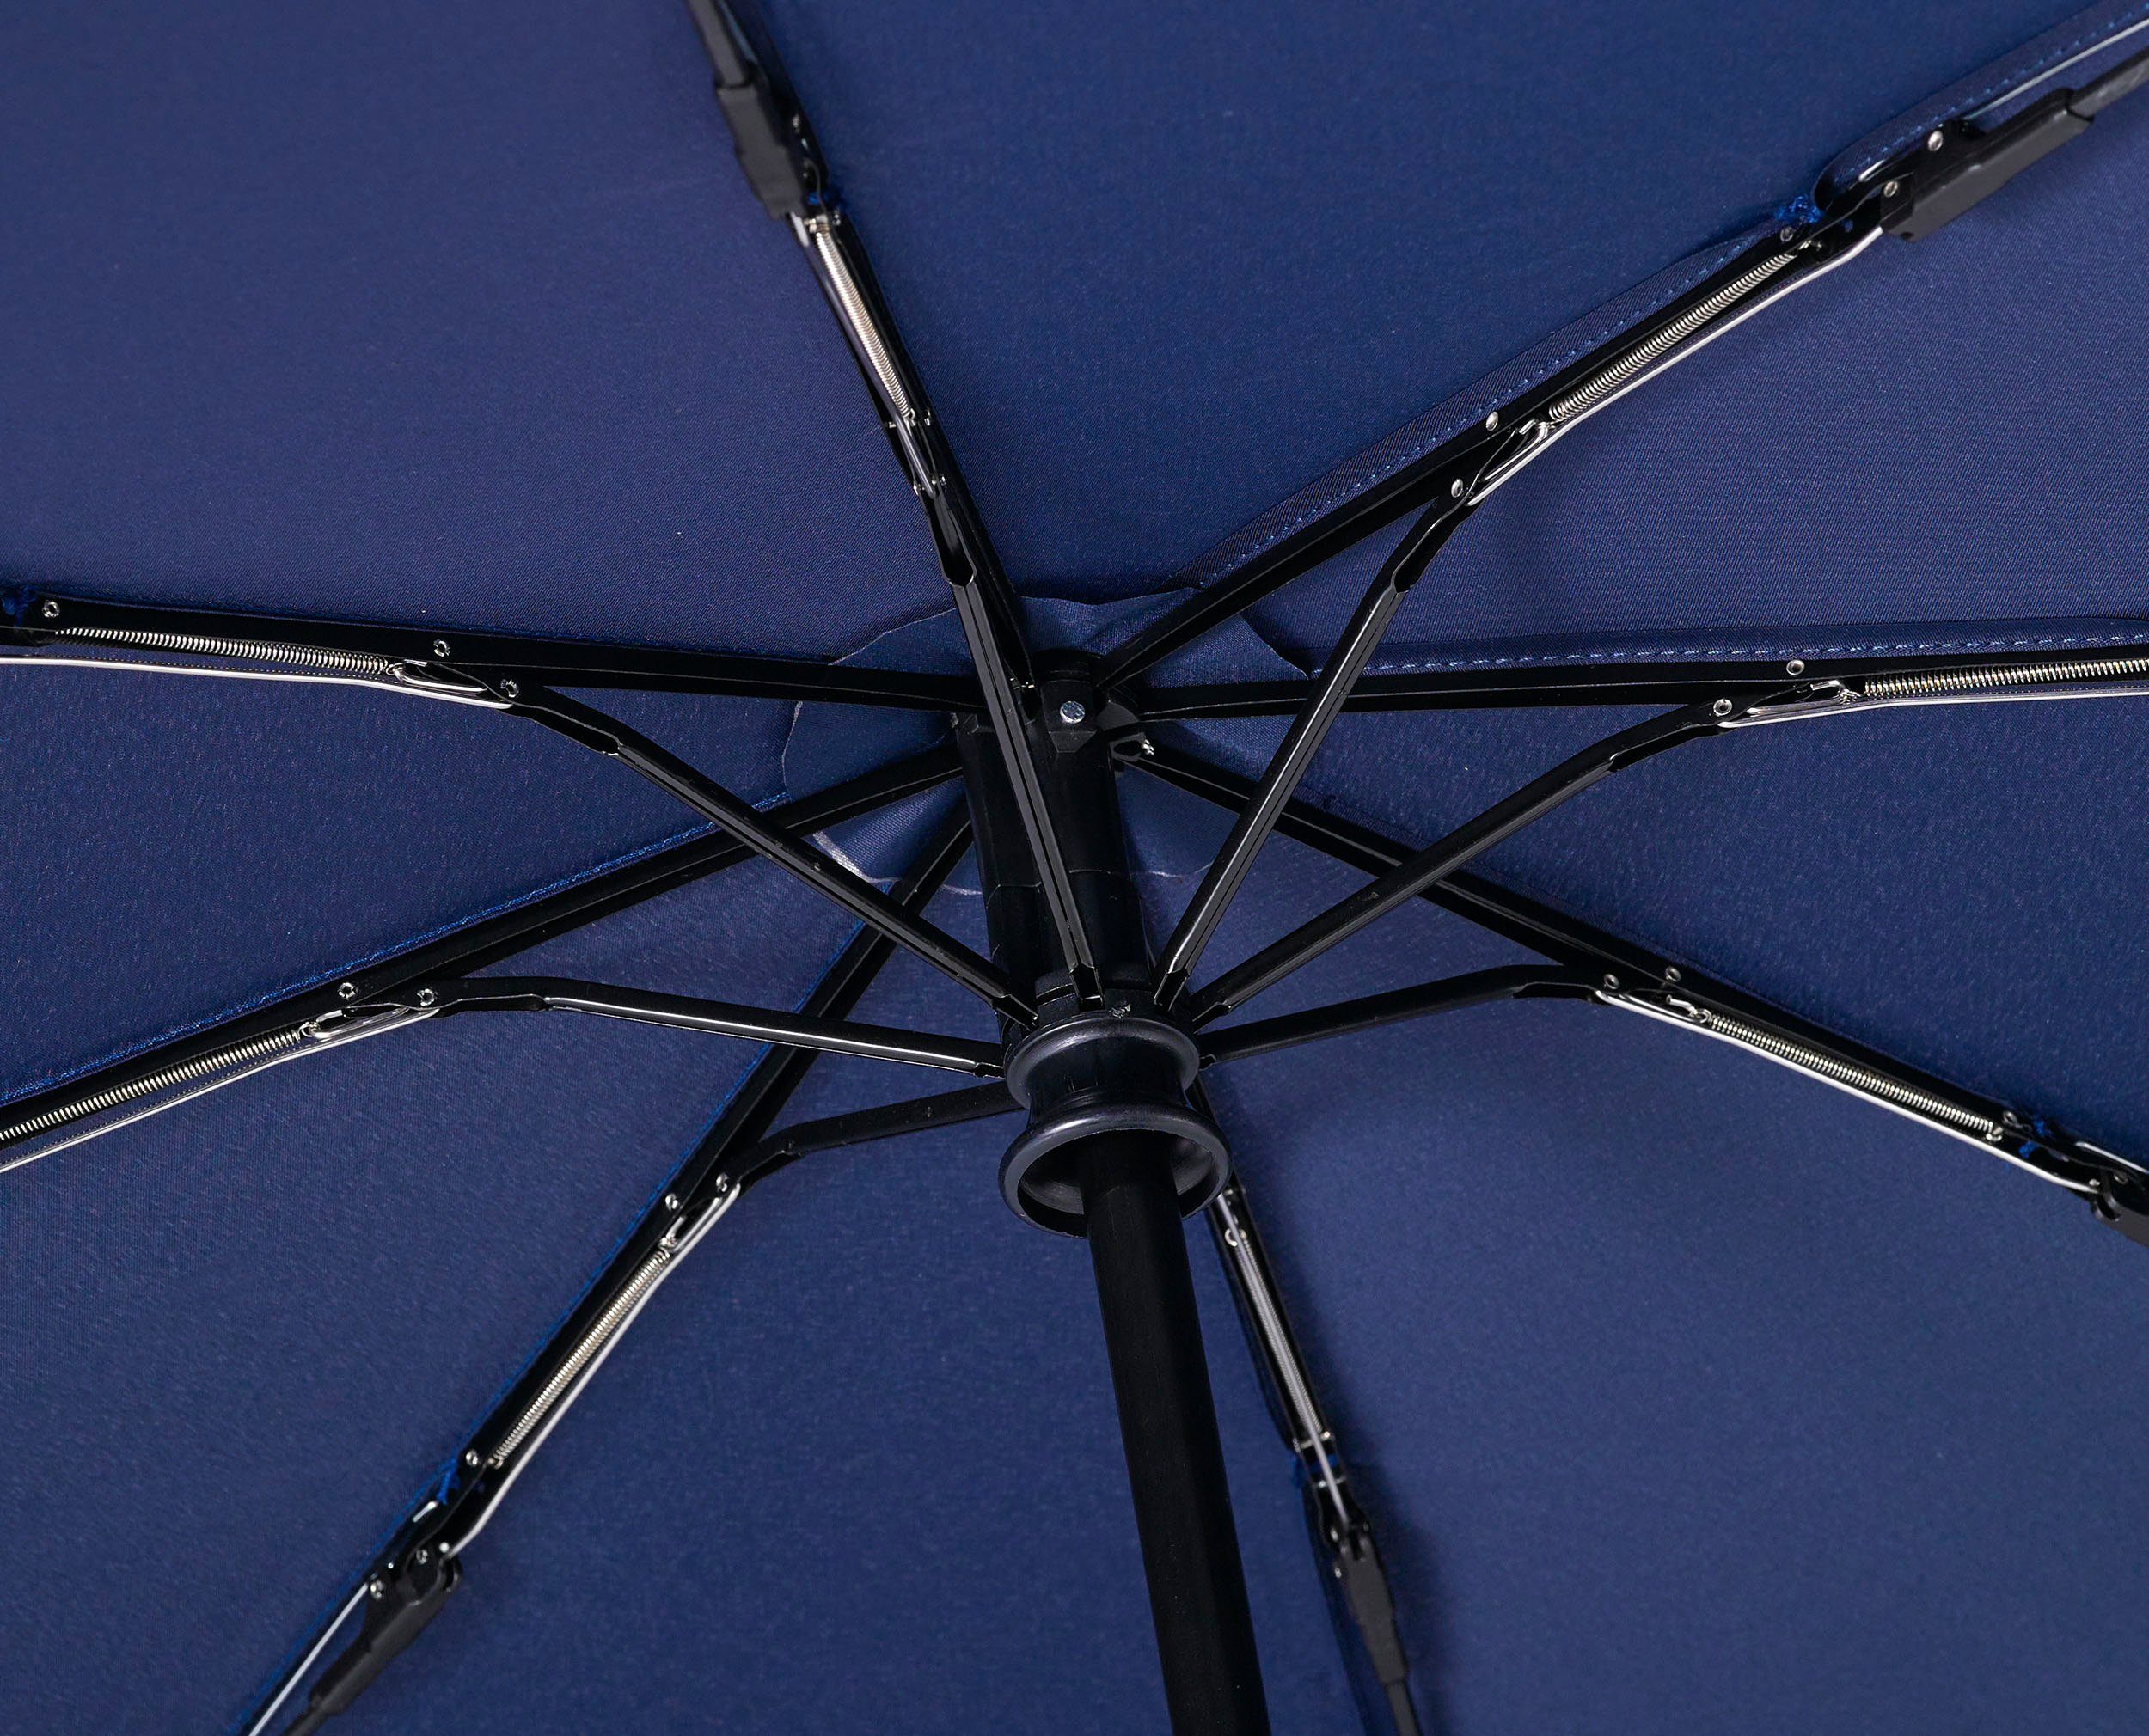 EuroSCHIRM® Taschenregenschirm blau marine, Umwelt-Taschenschirm, Kreise